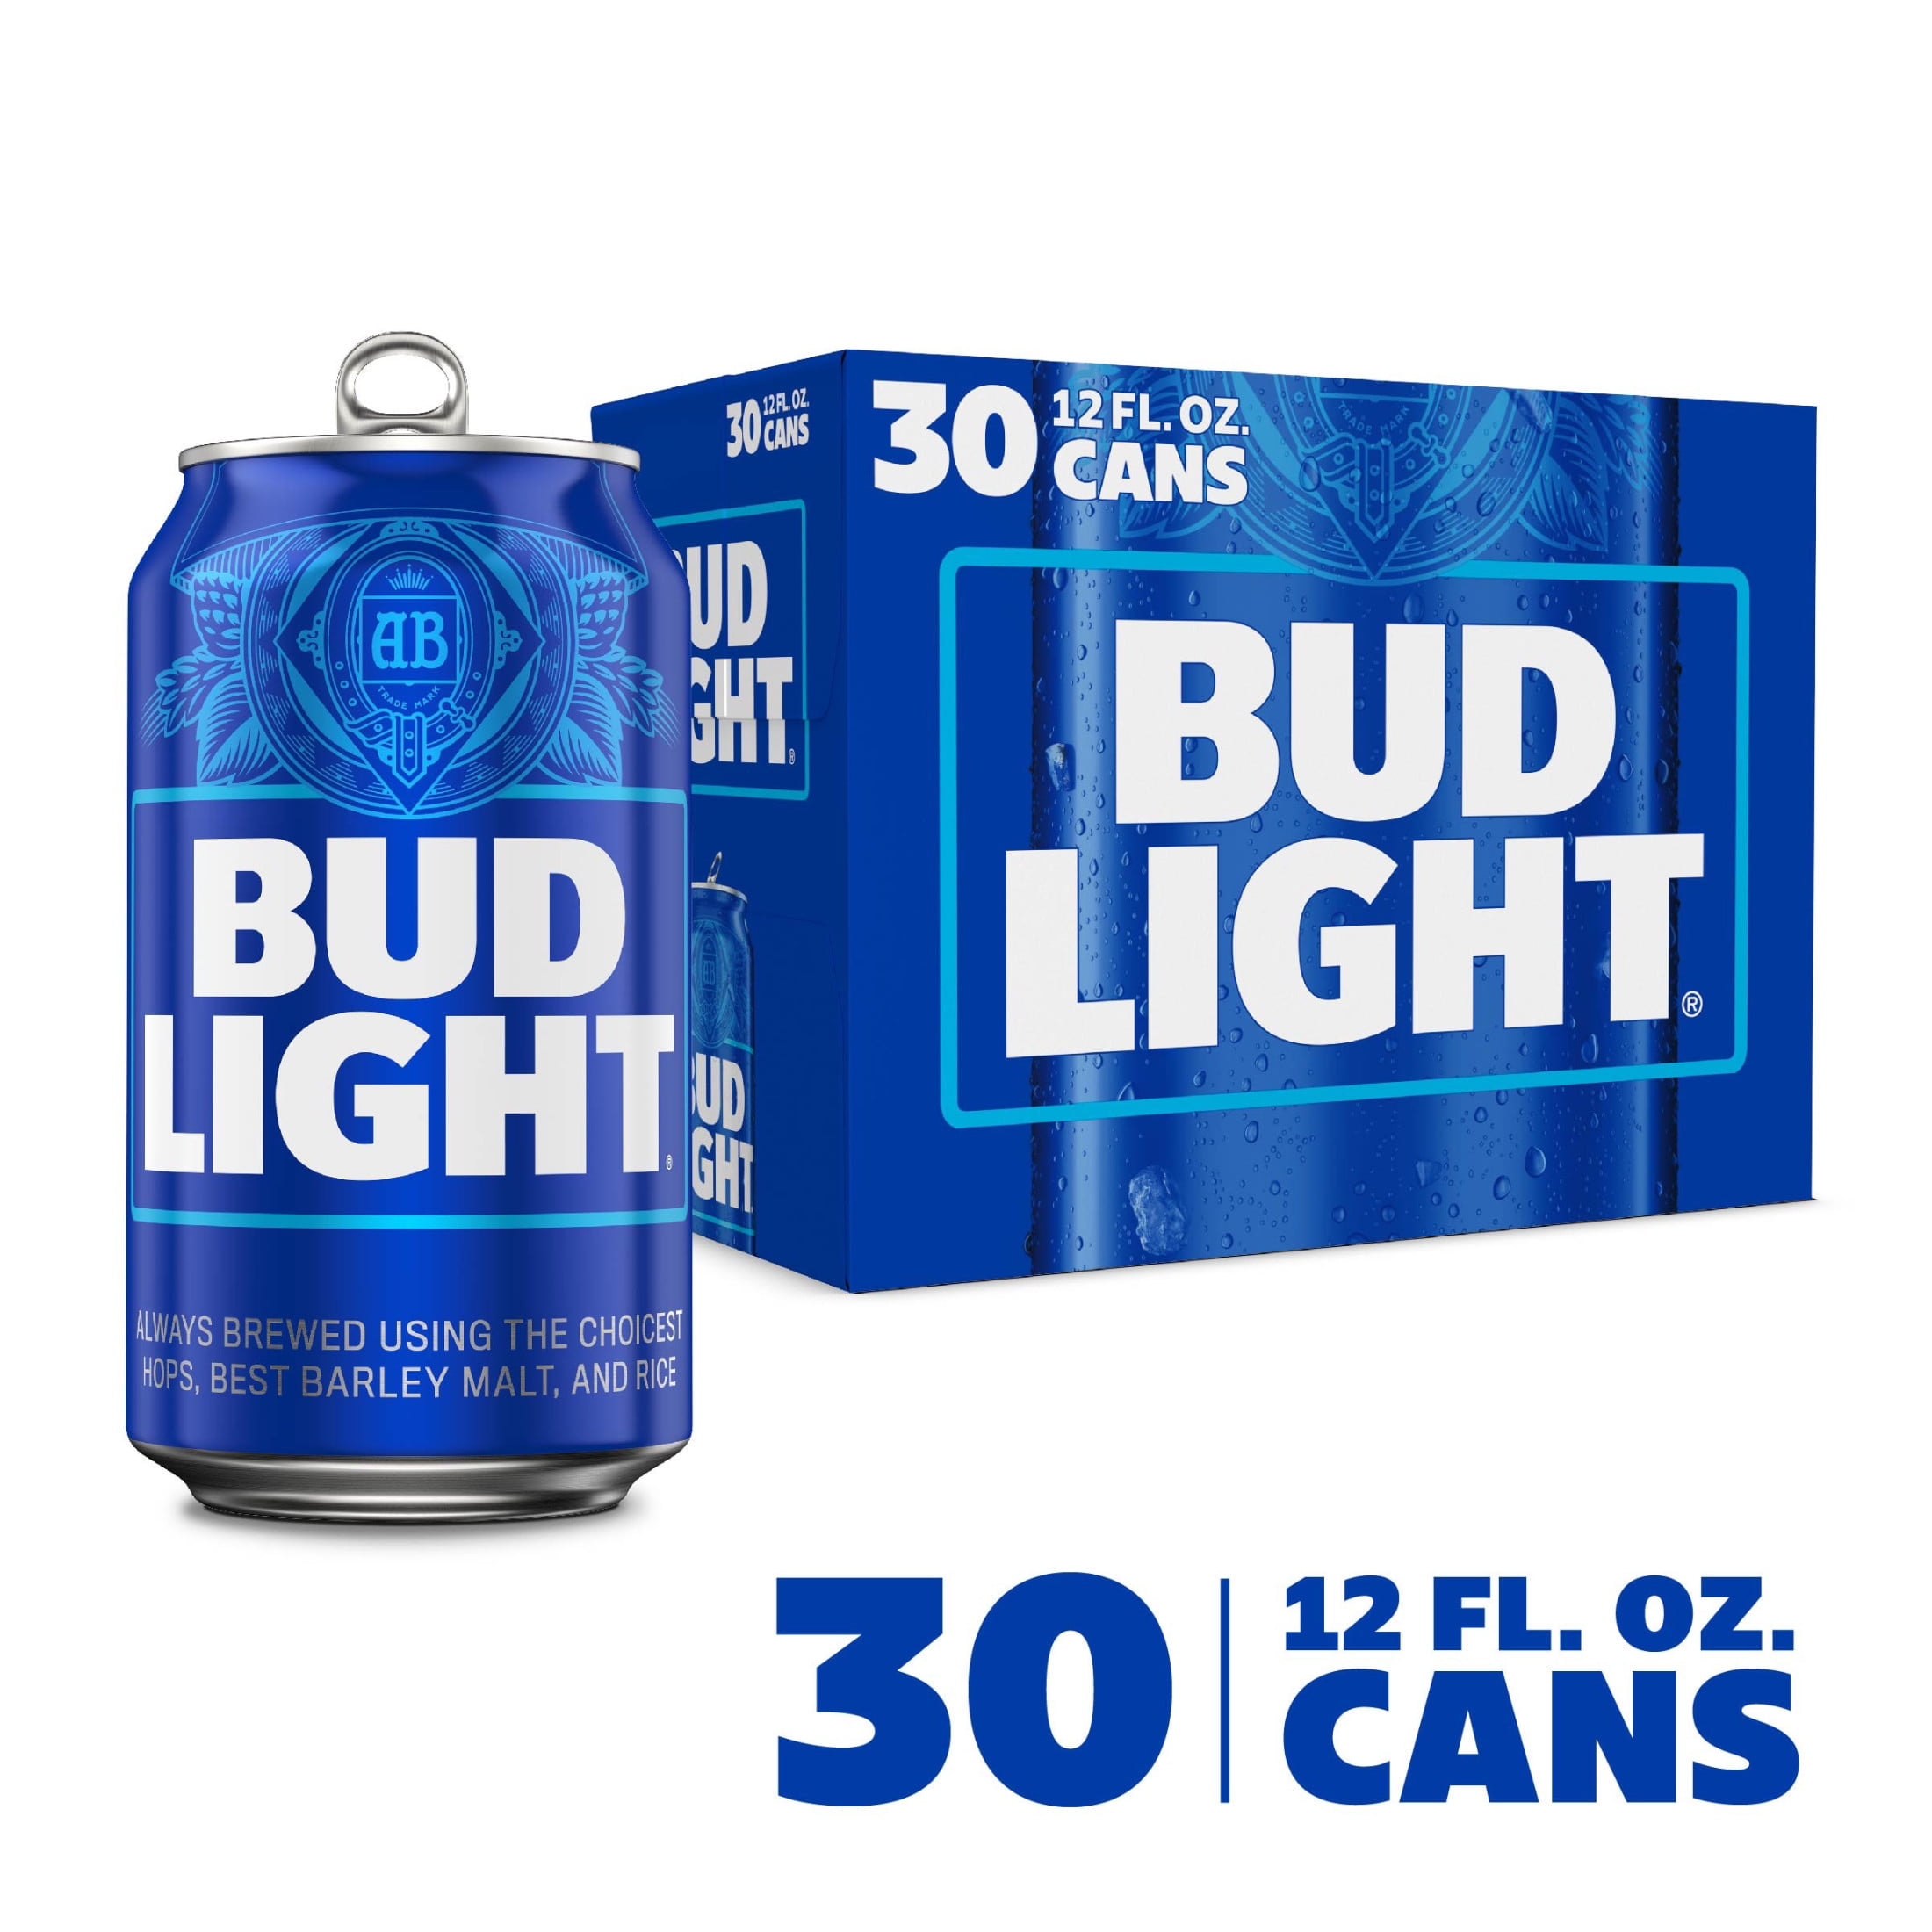 bud light 30 pack beer